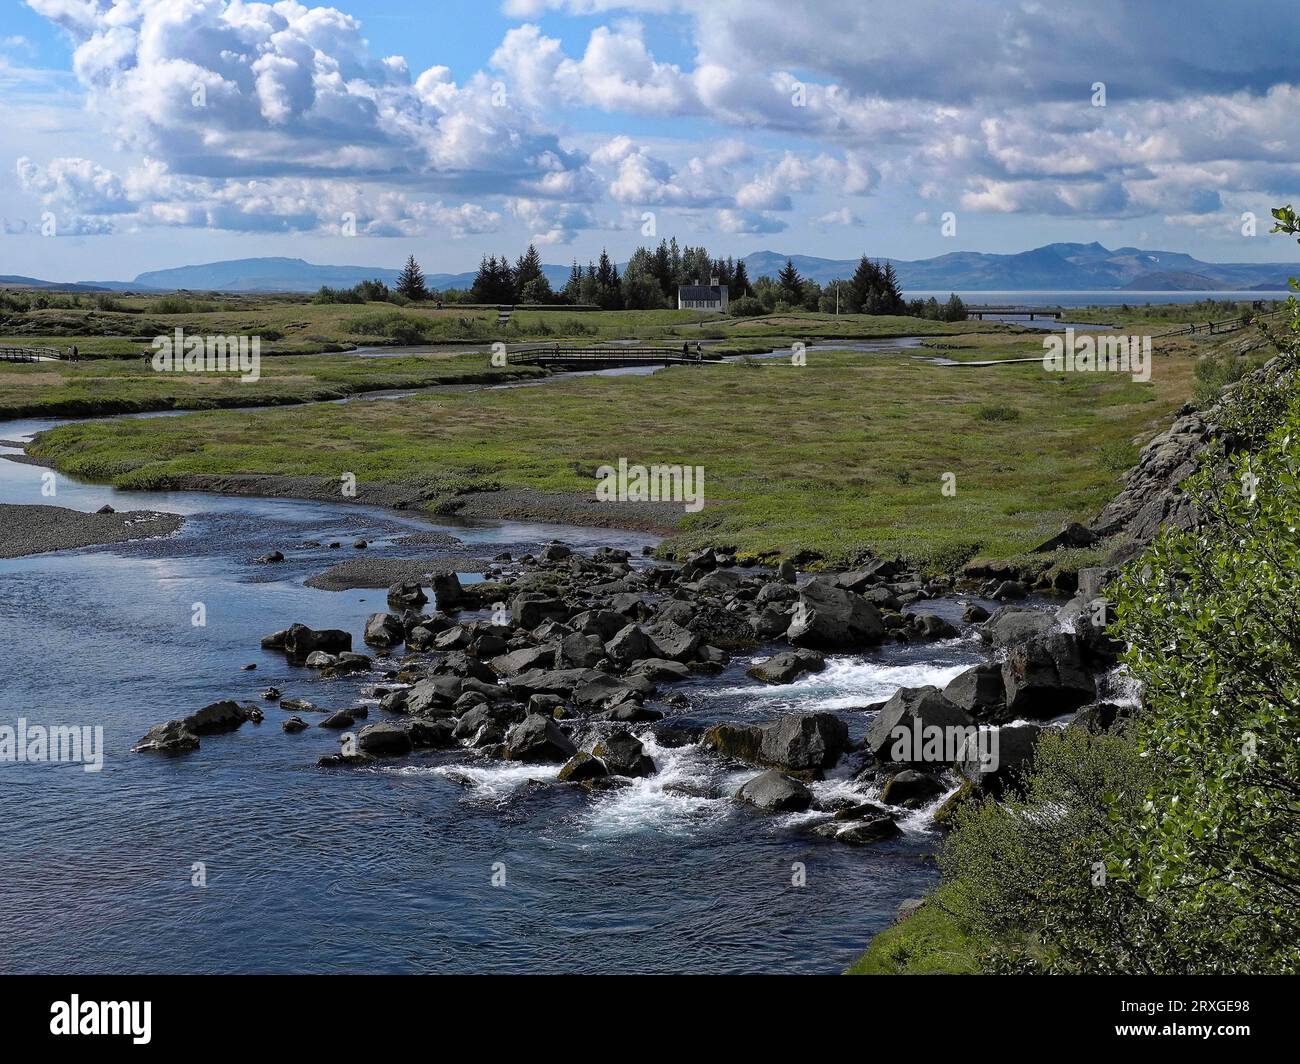 Parc national de Thingvellir dans le sud-ouest de l'Islande. Le parc national est un site du patrimoine mondial de l'UNESCO. Région de la capitale, Islande Banque D'Images